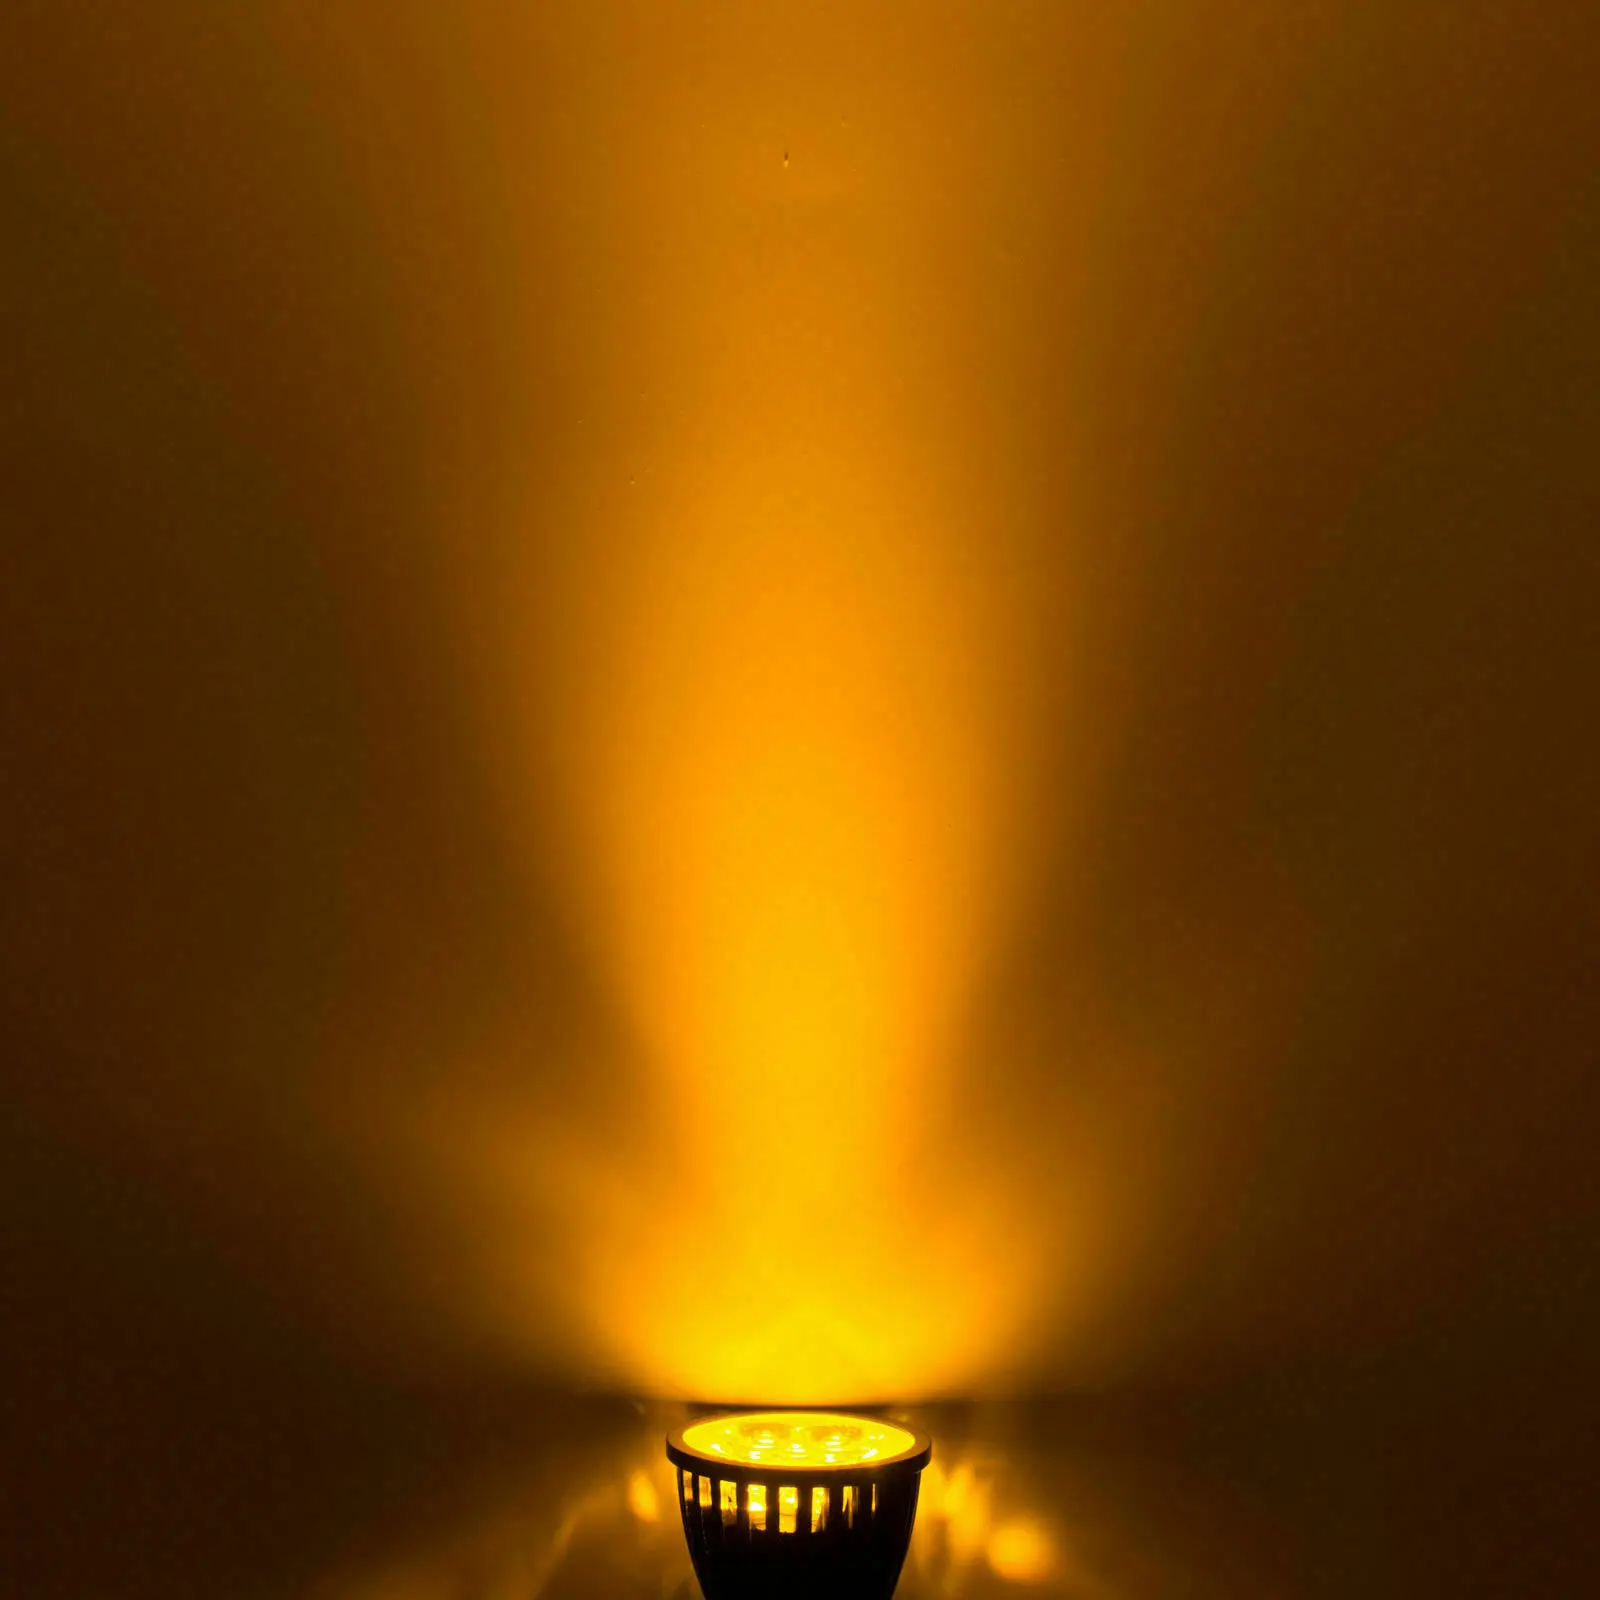 Затемнения светодиодный лампада 9 Вт, 12 Вт, 15 Вт, GU10 MR16 GU5.3 E27 E14 светодиодный лампы 110V 220V 12V Светодиодный прожектор красные, синие зеленый желтый светодиодный потолочный светильник